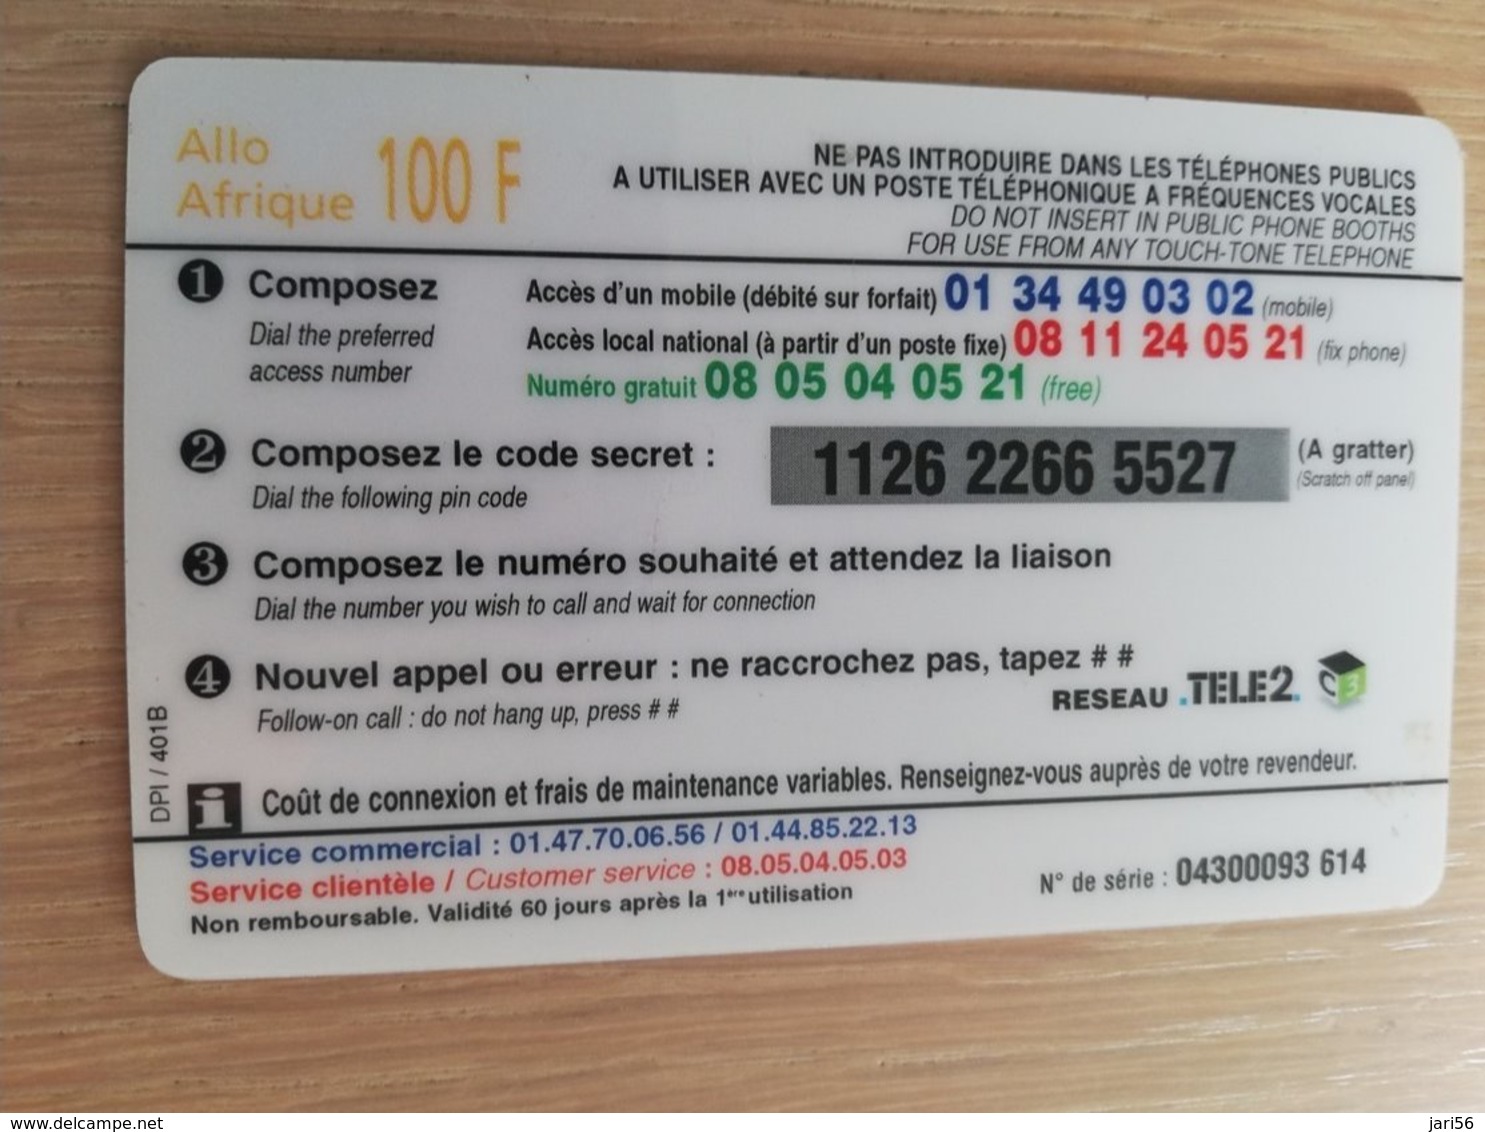 FRANCE/FRANKRIJK  ALLO AFRIQUE 100 FR  PREPAID  USED    ** 1512** - Mobicartes (GSM/SIM)